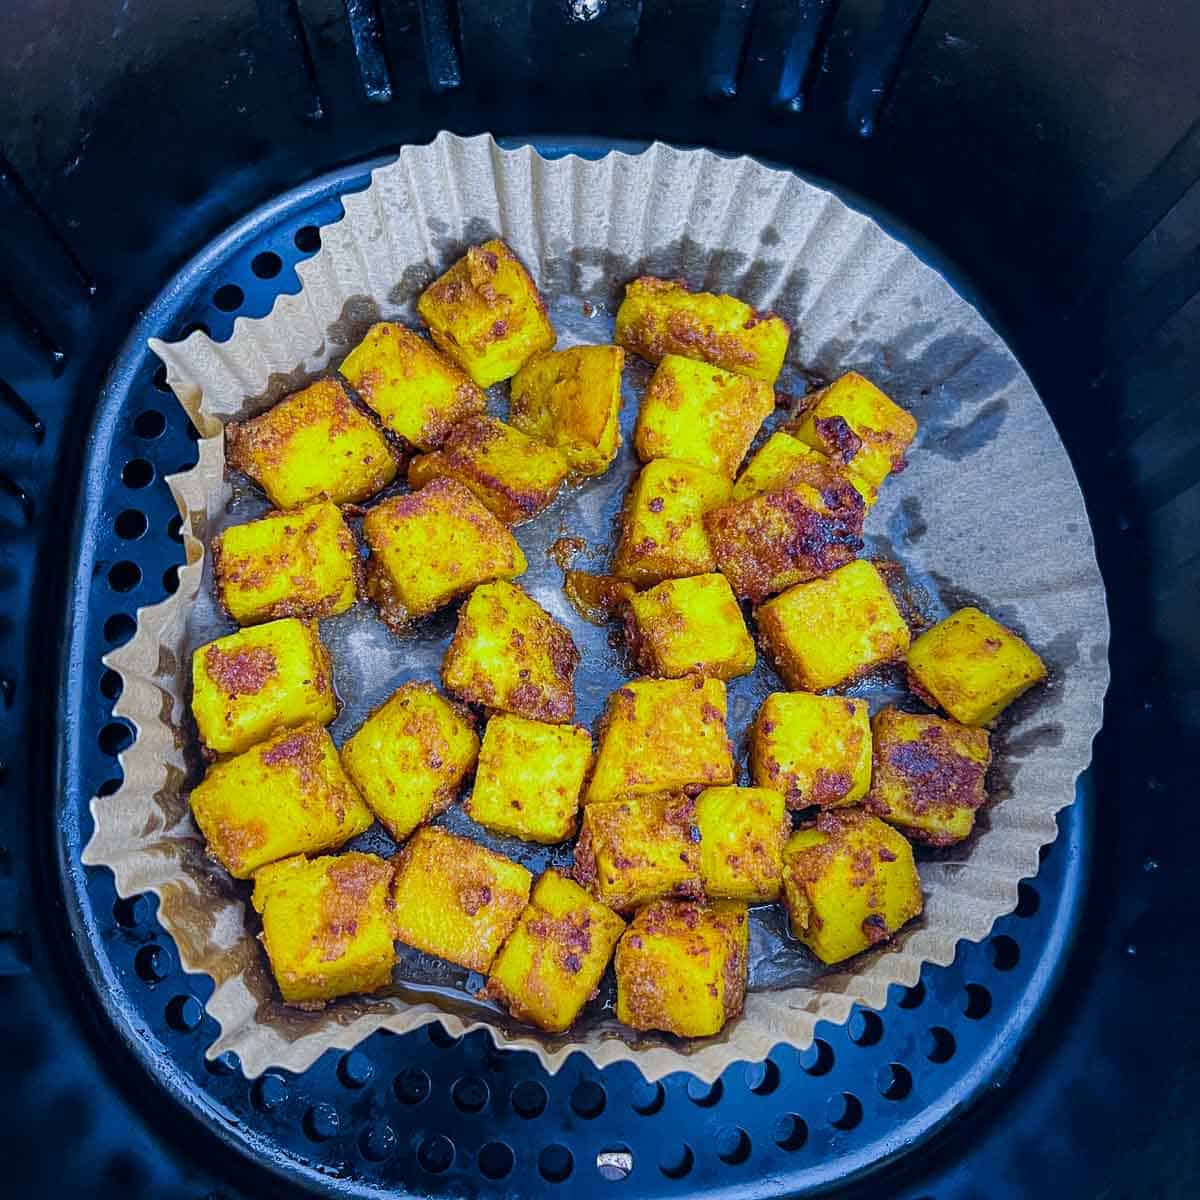 Roasted chickpea tofu in air fryer basket.